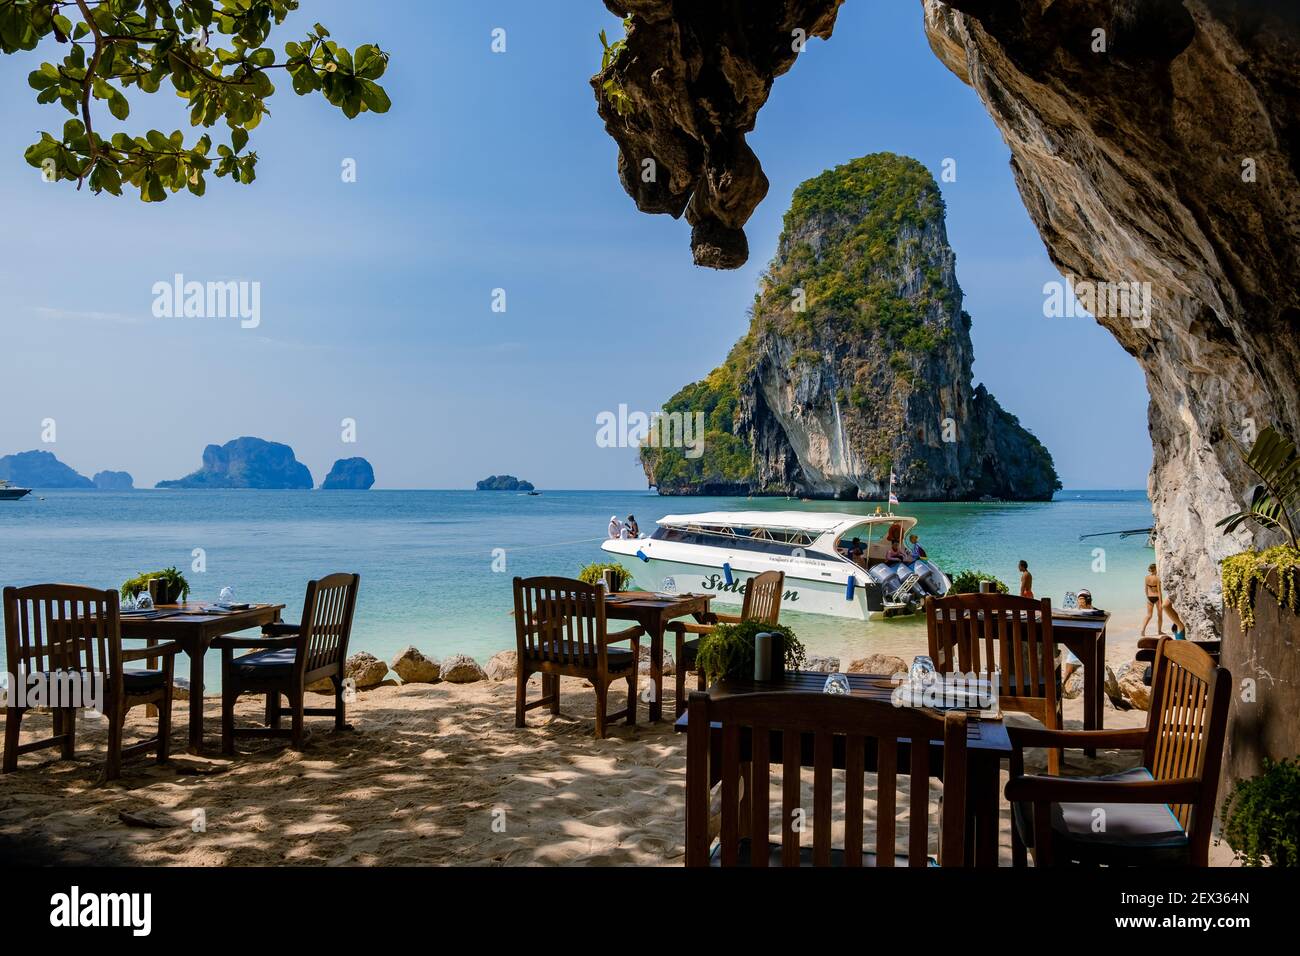 Restaurant Abendessen Tische oder Mittagessen am Strand Railay Strand mit einer schönen Kulisse von Ko Rang NOK Insel in Thailand Krabi. Klippen in Krabi am Strand Stockfoto